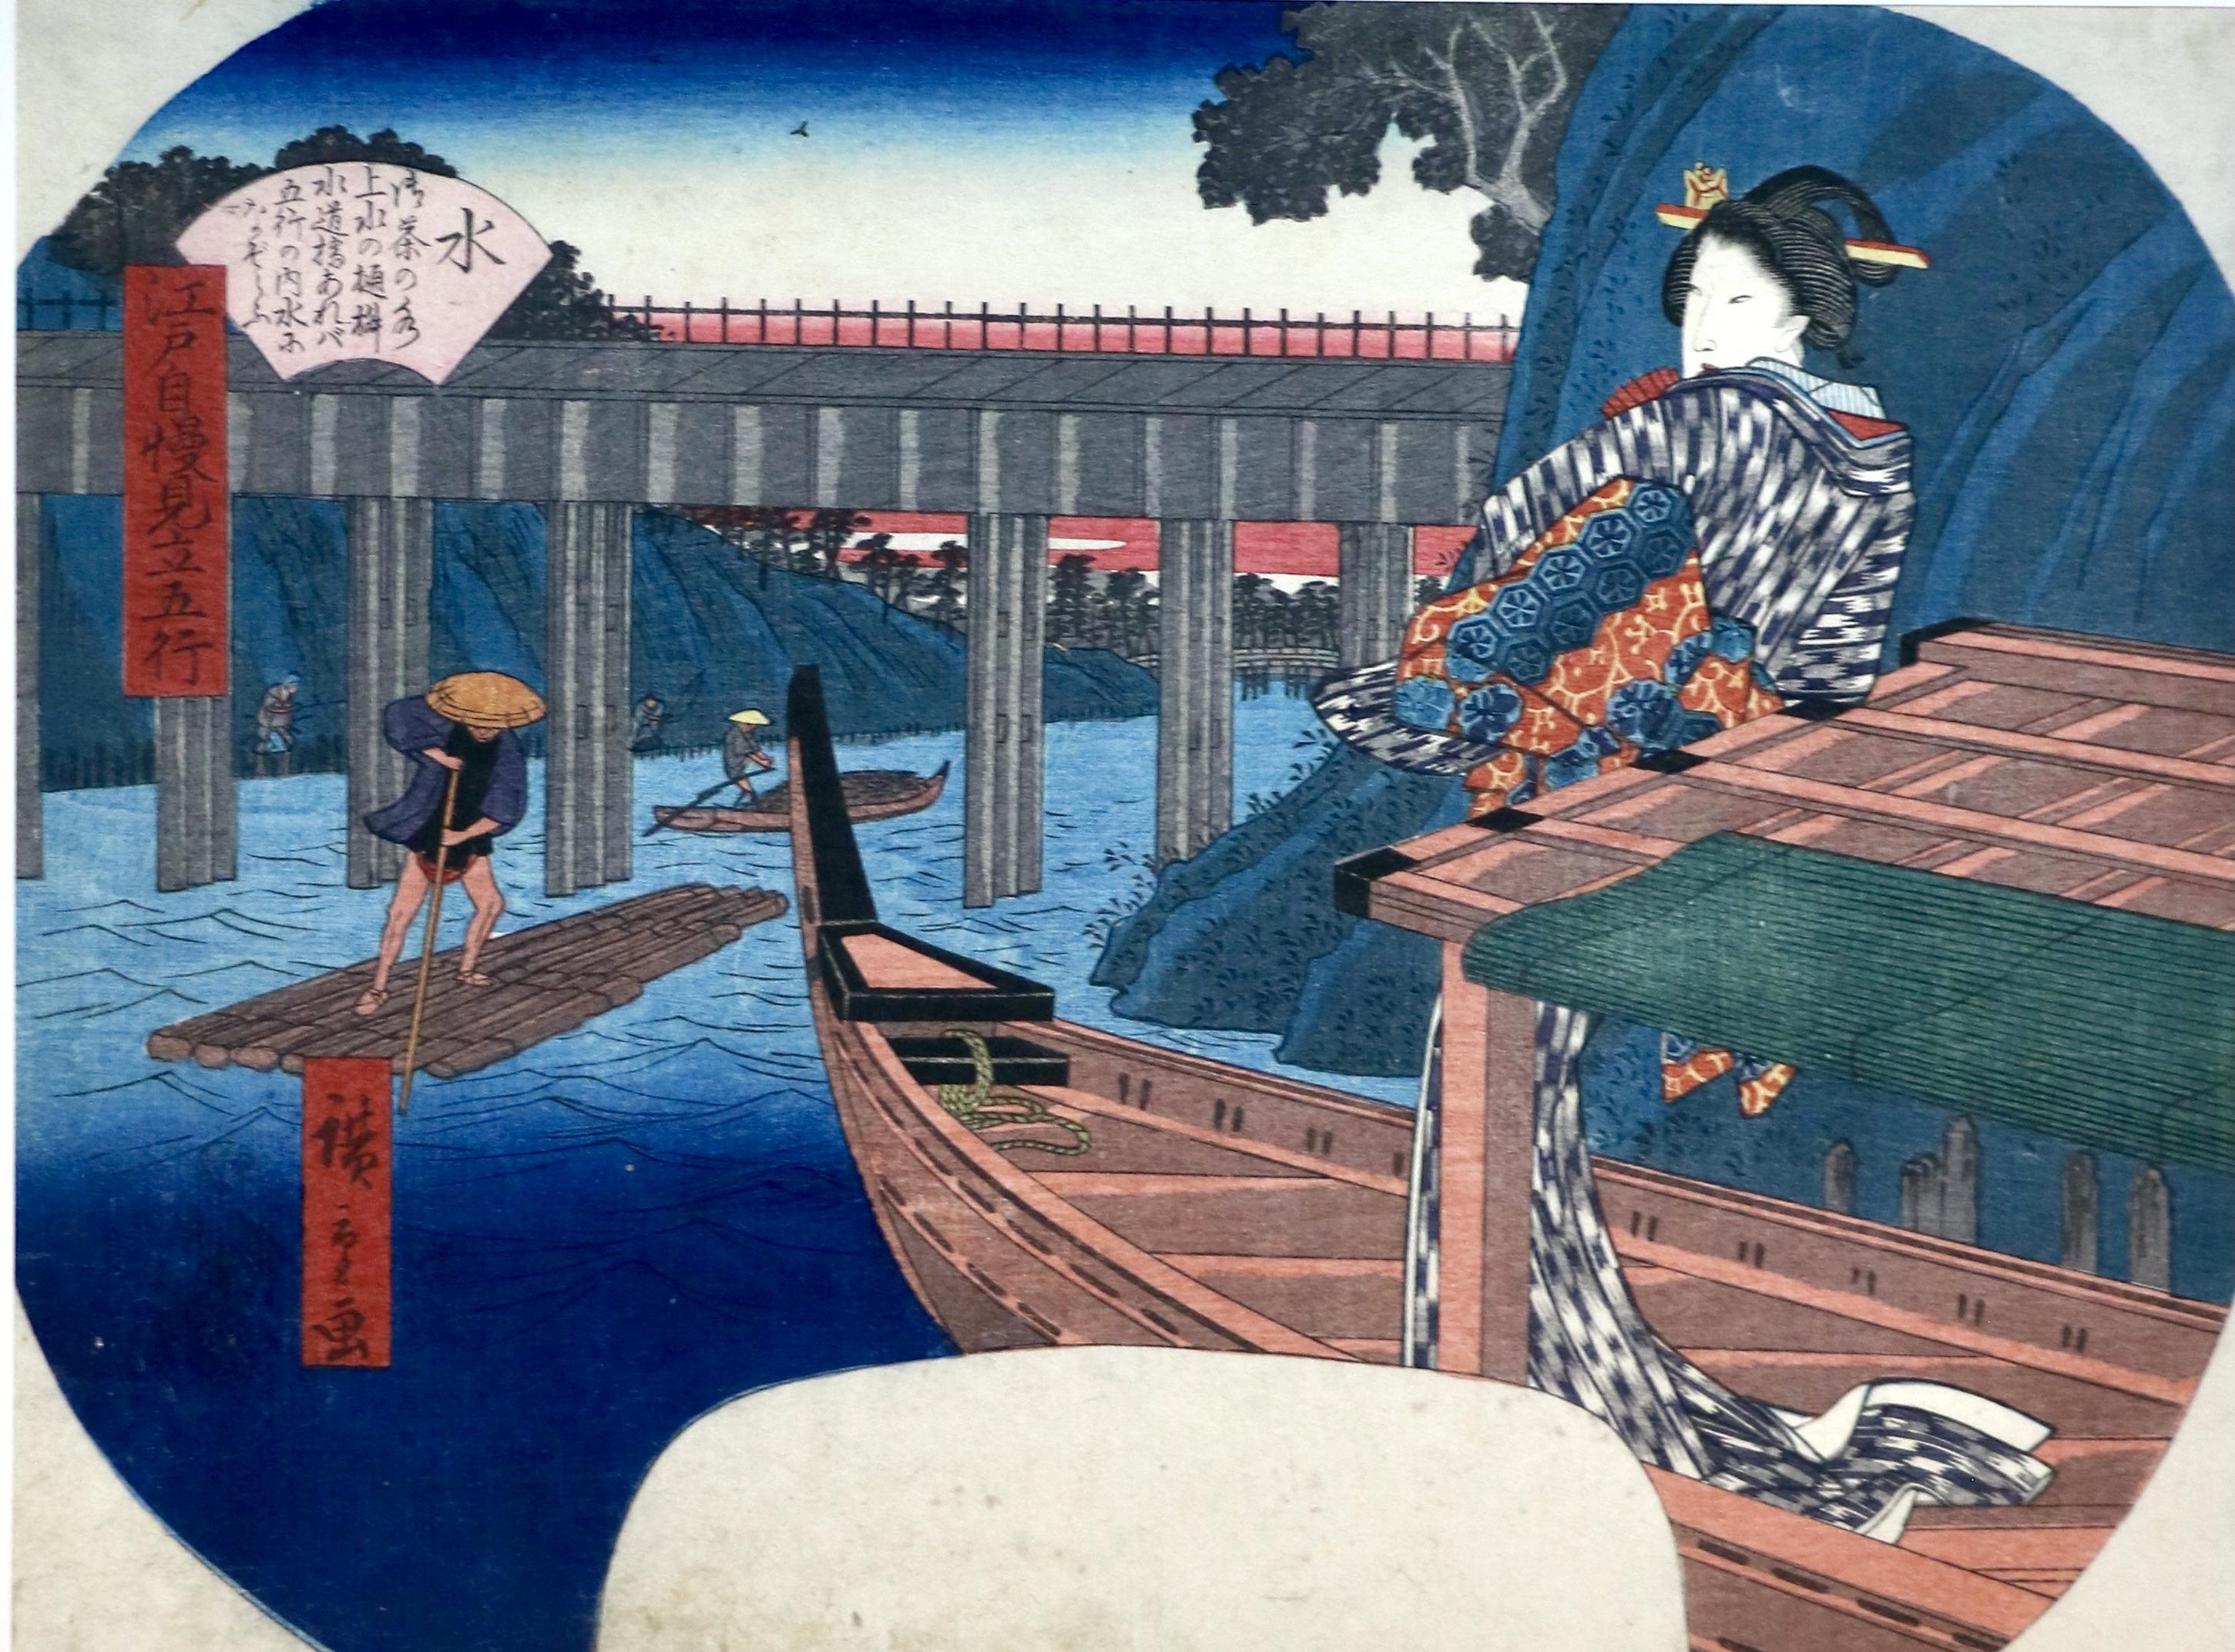 [JAPANESE PRINT] – HIROSHIGE, Utagawa (1797-1858). “Mizu – Ochanomizu josui no himasu Suidobashi areba gogyo no uchi mizu ni nazorau” (Water – the square aqueduct that crosses by Suido Bridge suggests the comparison of Ochanomizu to water). by Utagawa Hiroshige